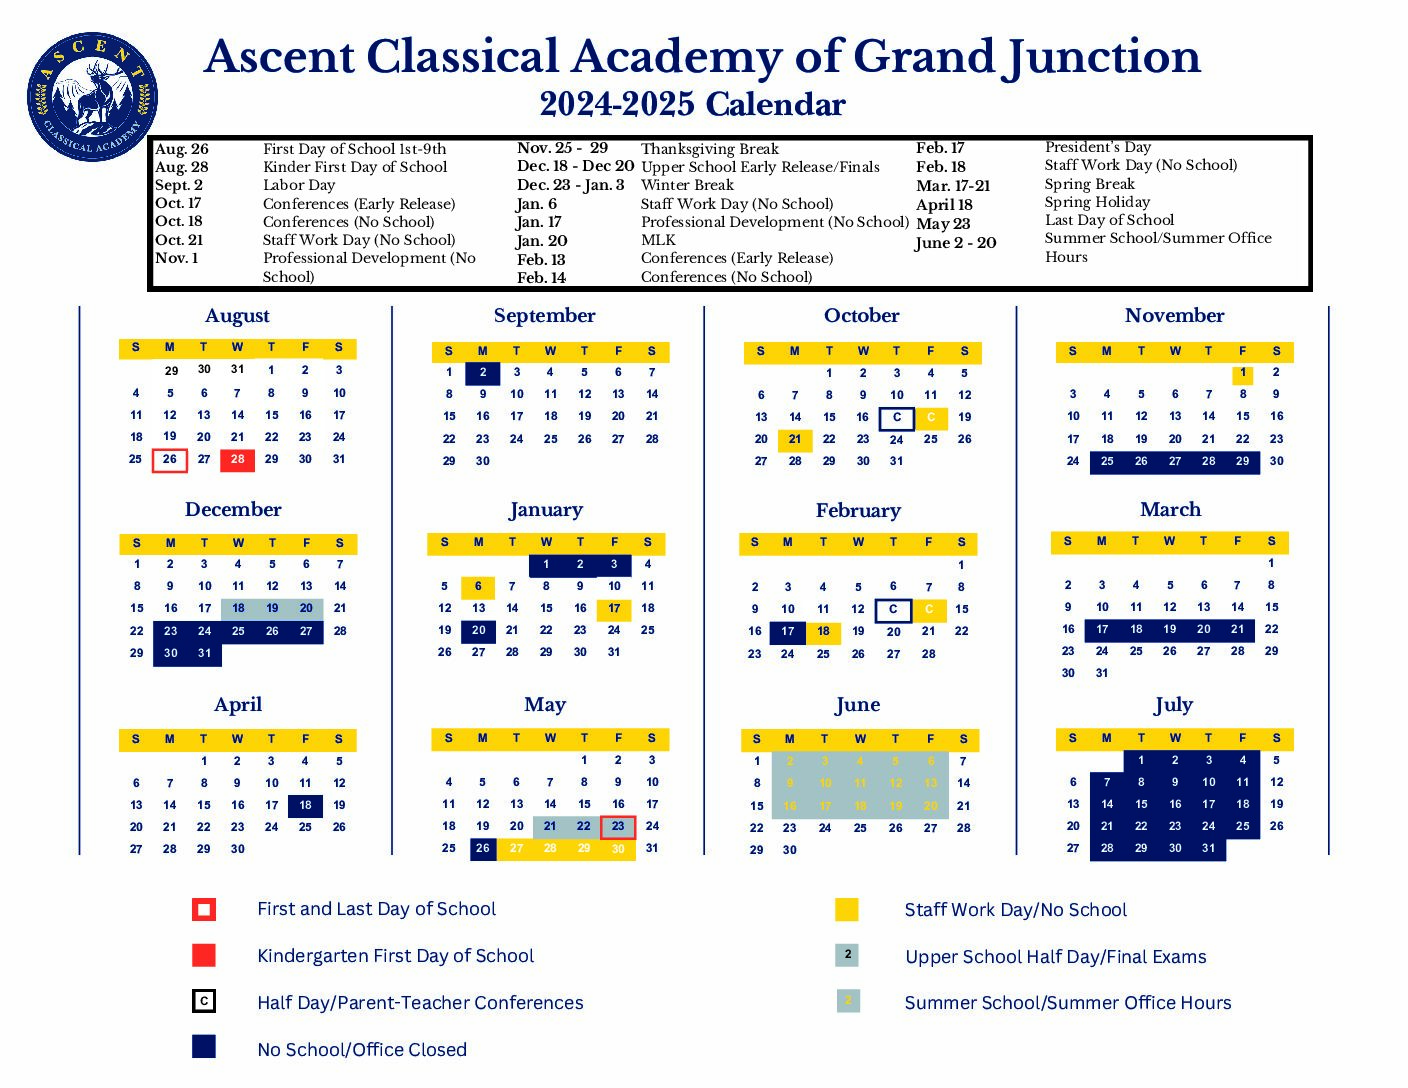 2022-2023 Academic Calendar for ACADC